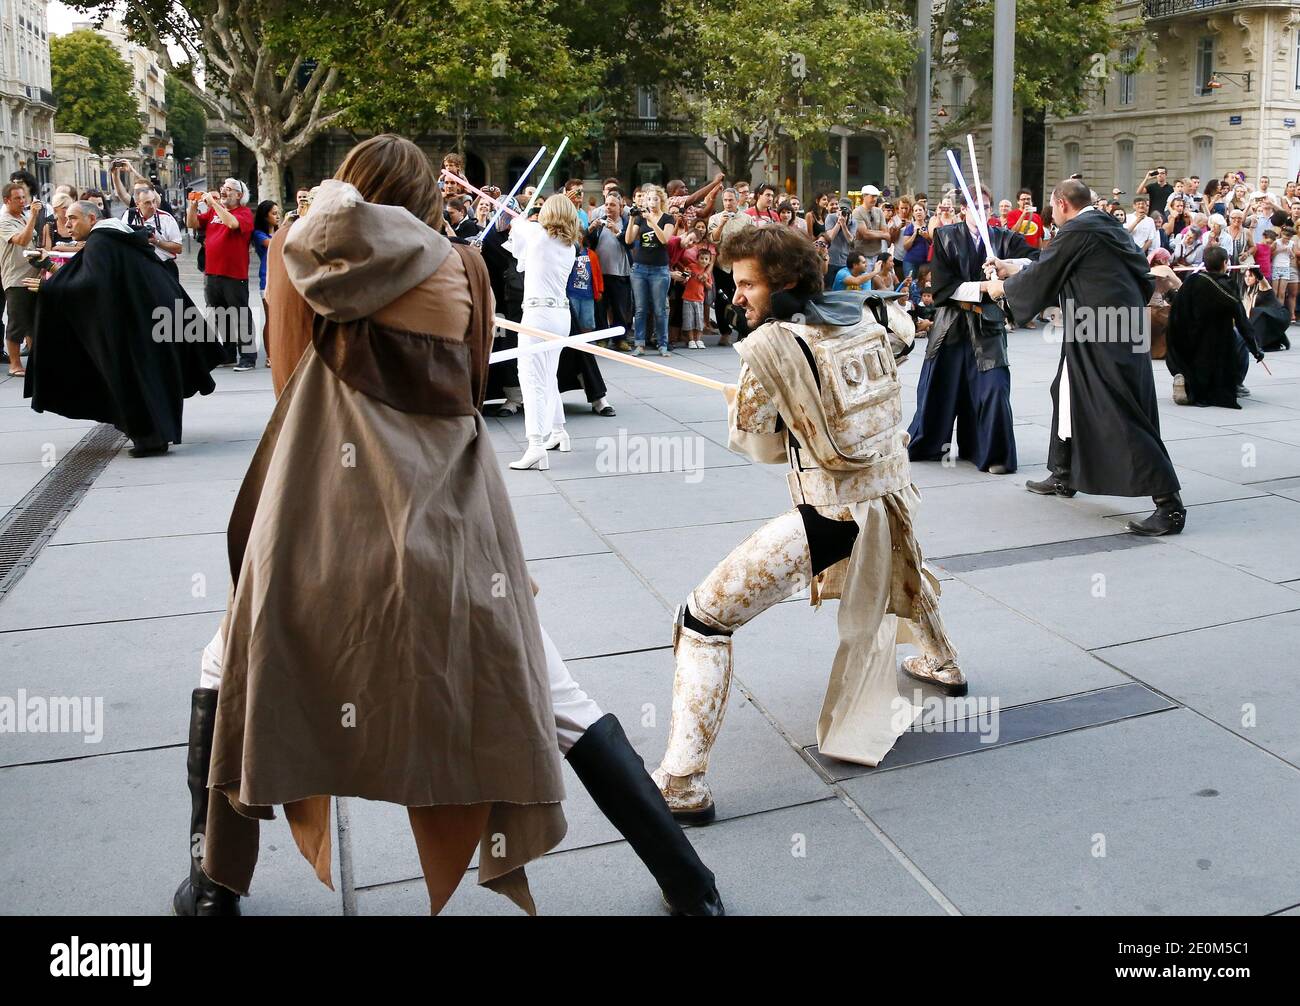 Quasi 50 membri dei fan club di 'Star Wars' hanno organizzato una battaglia in flash mob da trasmettere su internet, ricreando una scena della famosa battaglia del film cult, nel centro della città di Bordeaux, nella Francia sud-occidentale, l'8 settembre 2012. Foto di Patrick Bernard/ABACAPRESS.COM Foto Stock